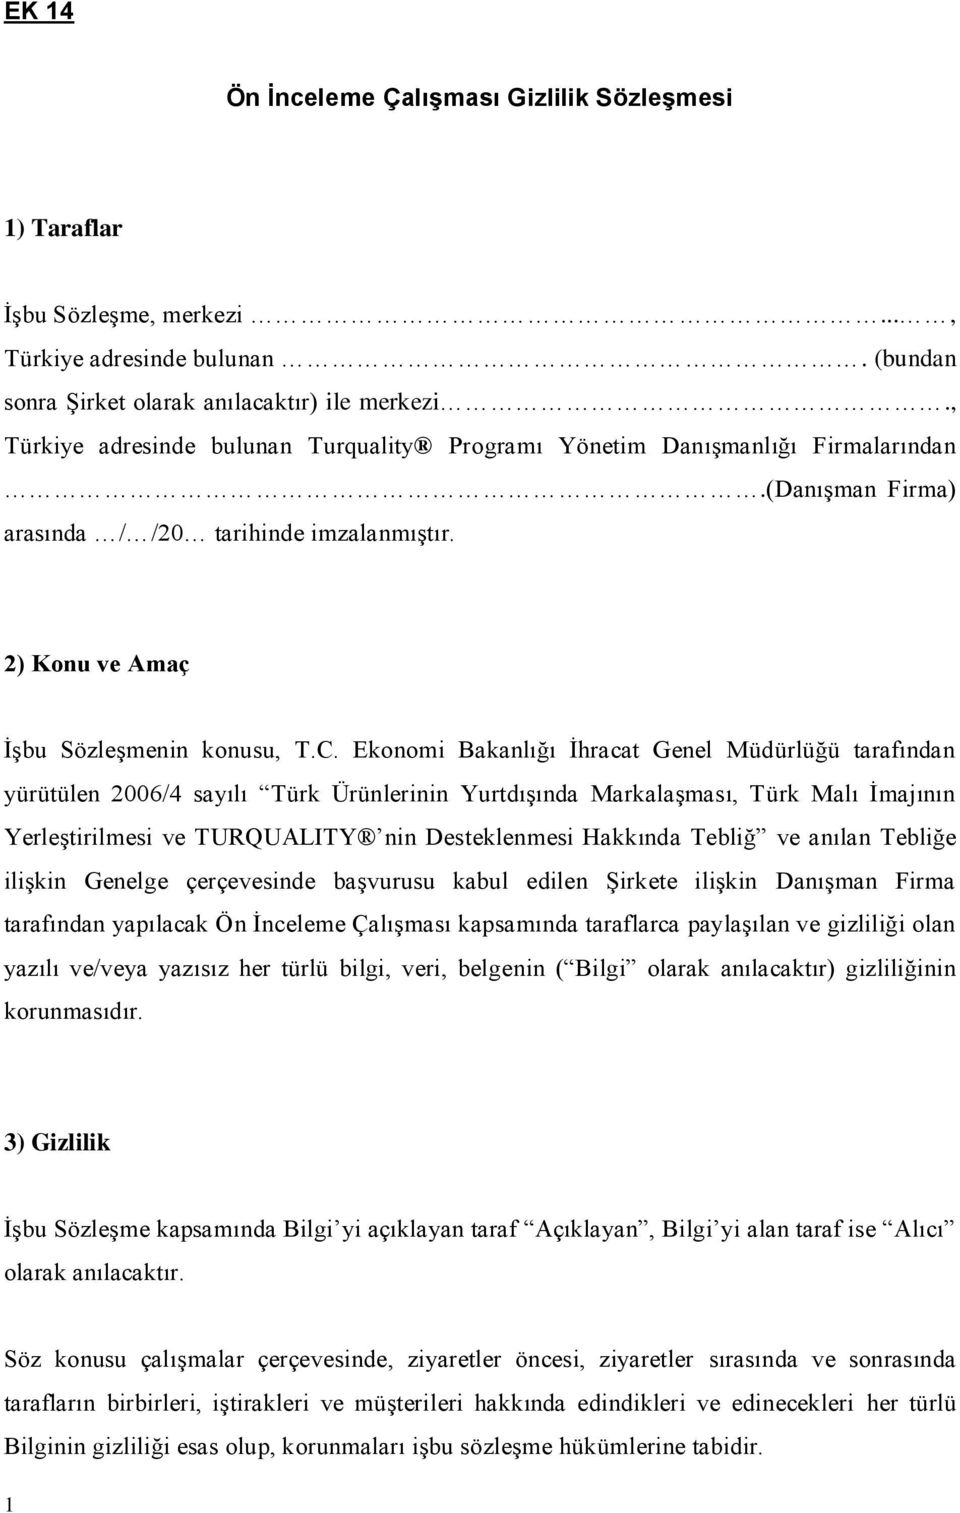 Ekonomi Bakanlığı İhracat Genel Müdürlüğü tarafından yürütülen 2006/4 sayılı Türk Ürünlerinin Yurtdışında Markalaşması, Türk Malı İmajının Yerleştirilmesi ve TURQUALITY nin Desteklenmesi Hakkında